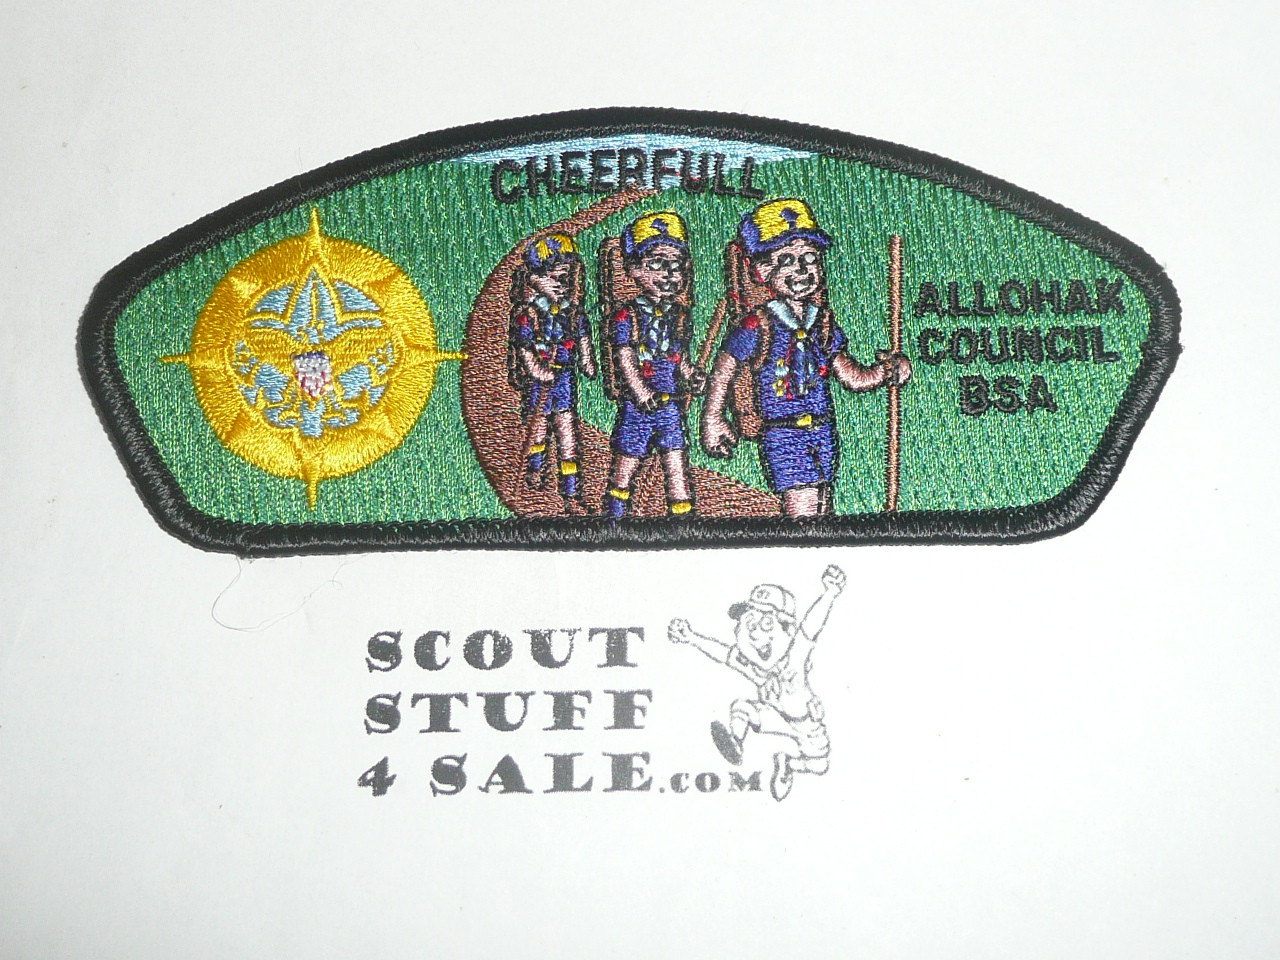 Allohak Council sa10 CSP - Scout